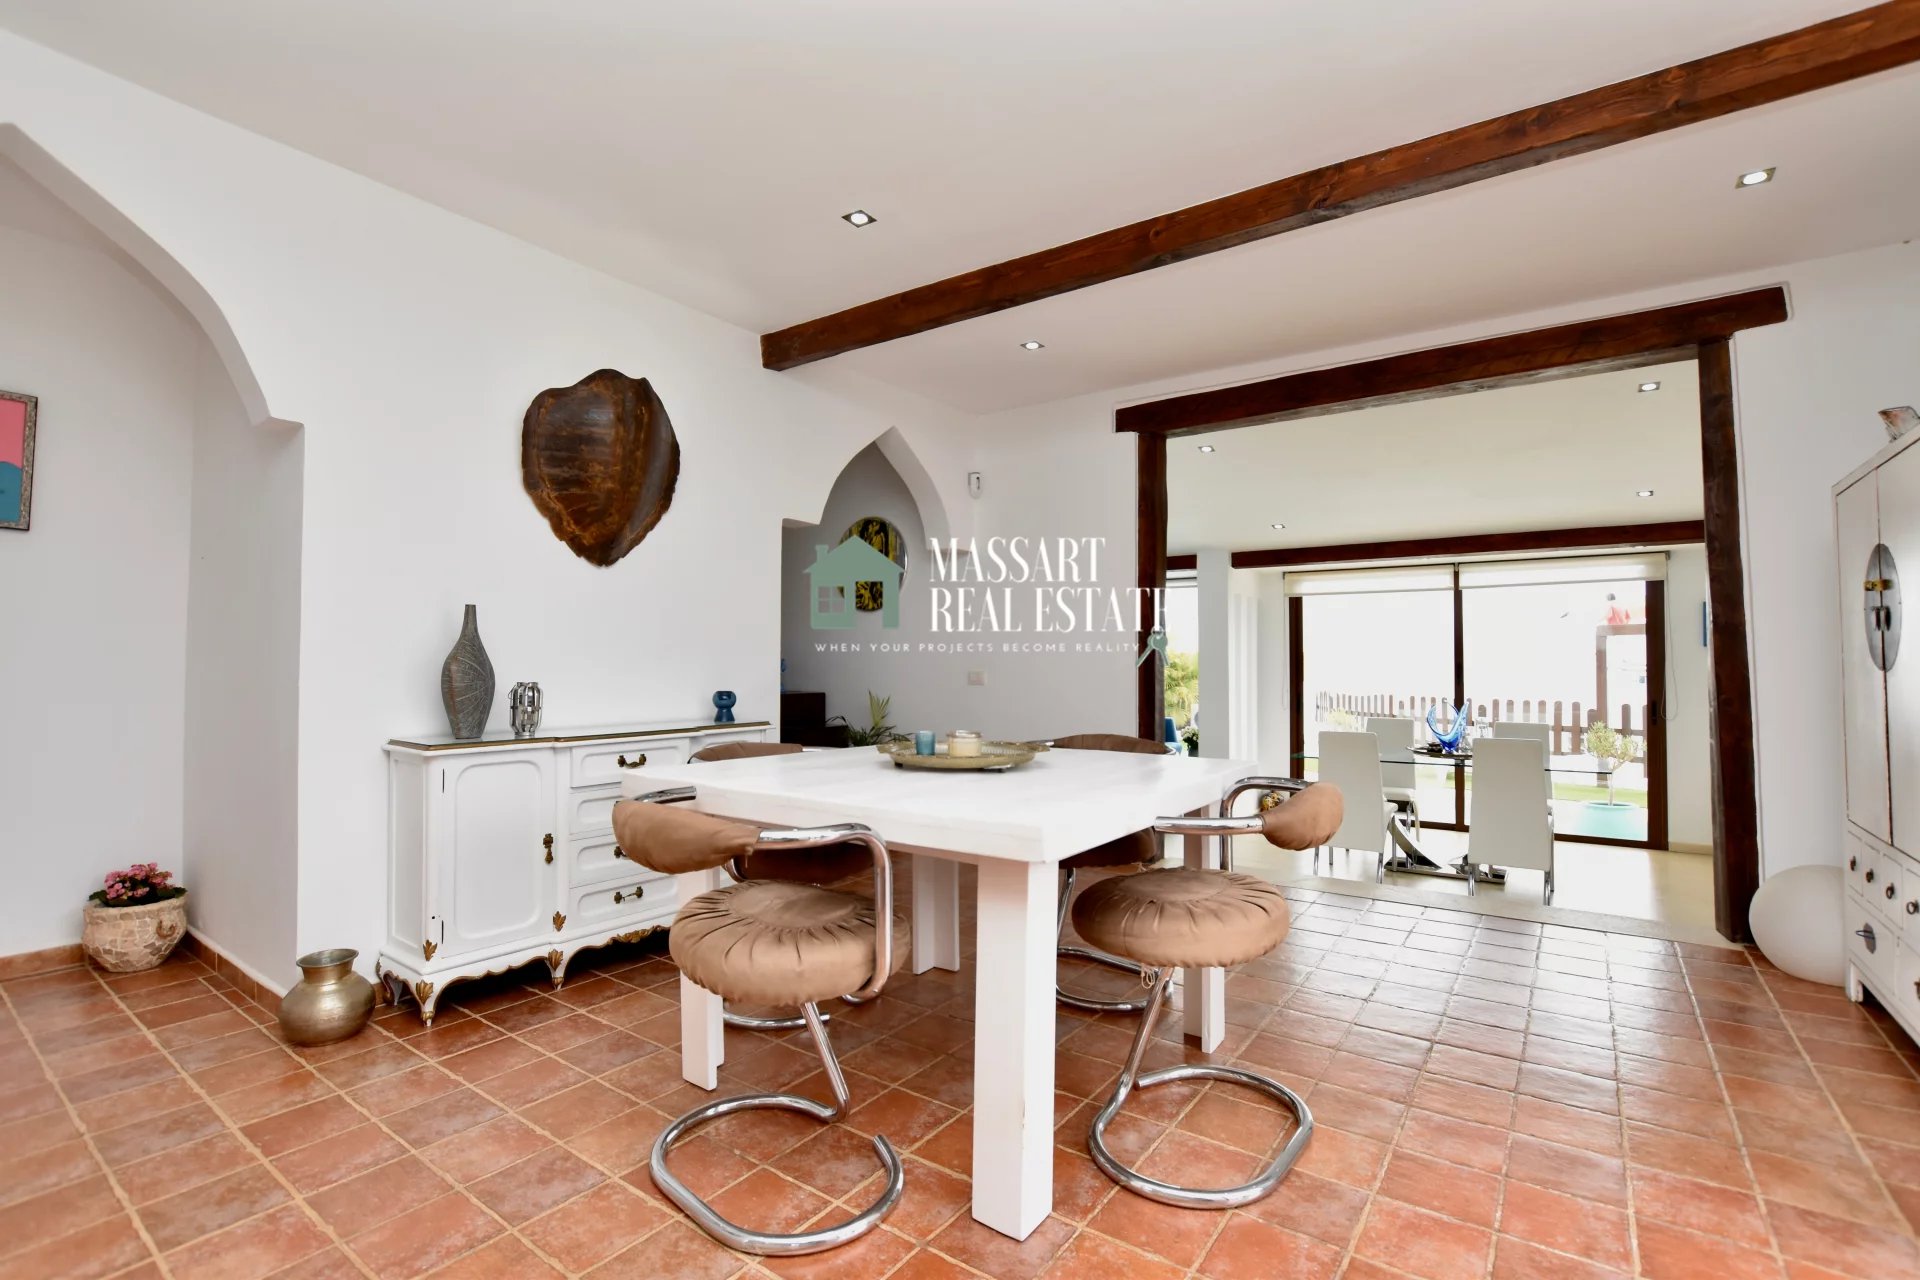 Wunderschönes Anwesen in einer Umgebung absoluter Privatsphäre und Ruhe auf einem 1.433 m2 großen Grundstück in einem zentralen Bereich von Cabo Blanco.